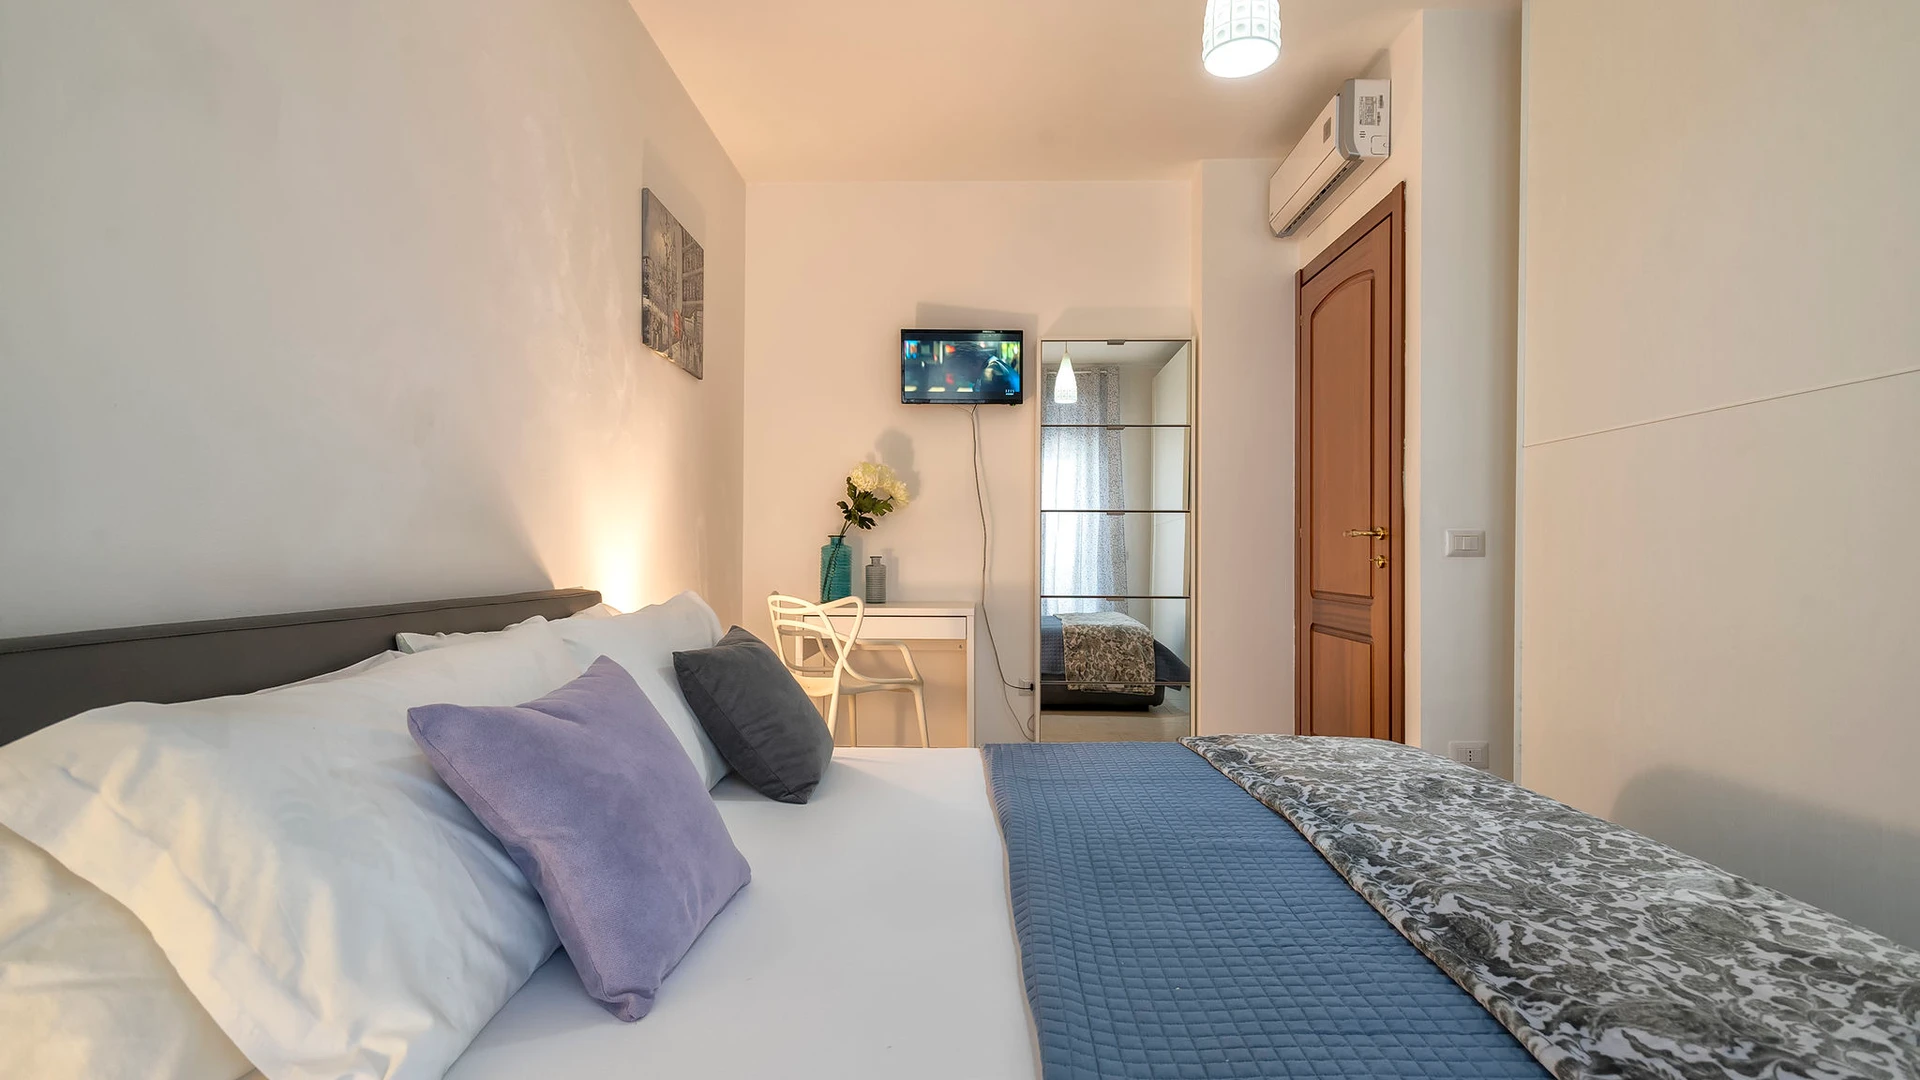 Apartamento moderno y luminoso en L'alguer/alghero